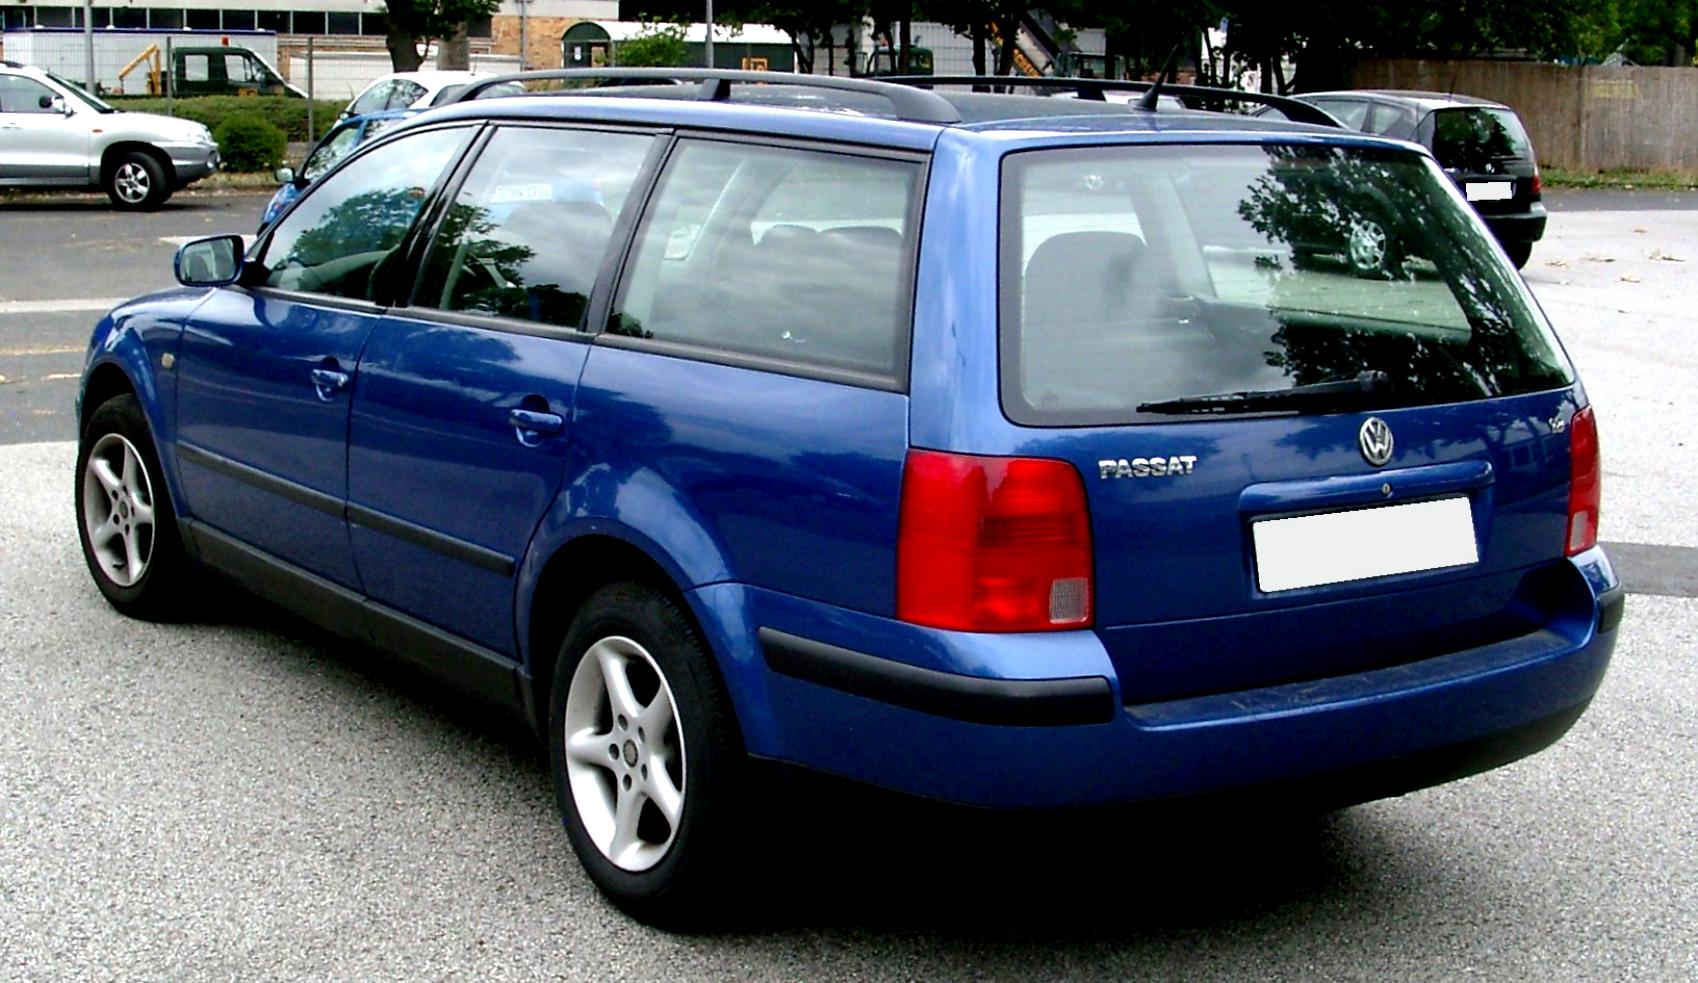 Volkswagen b5 универсал. VW Passat b5 variant. Фольксваген Пассат в5 универсал. VW Passat b5 универсал. VW Passat variant b5 1999.